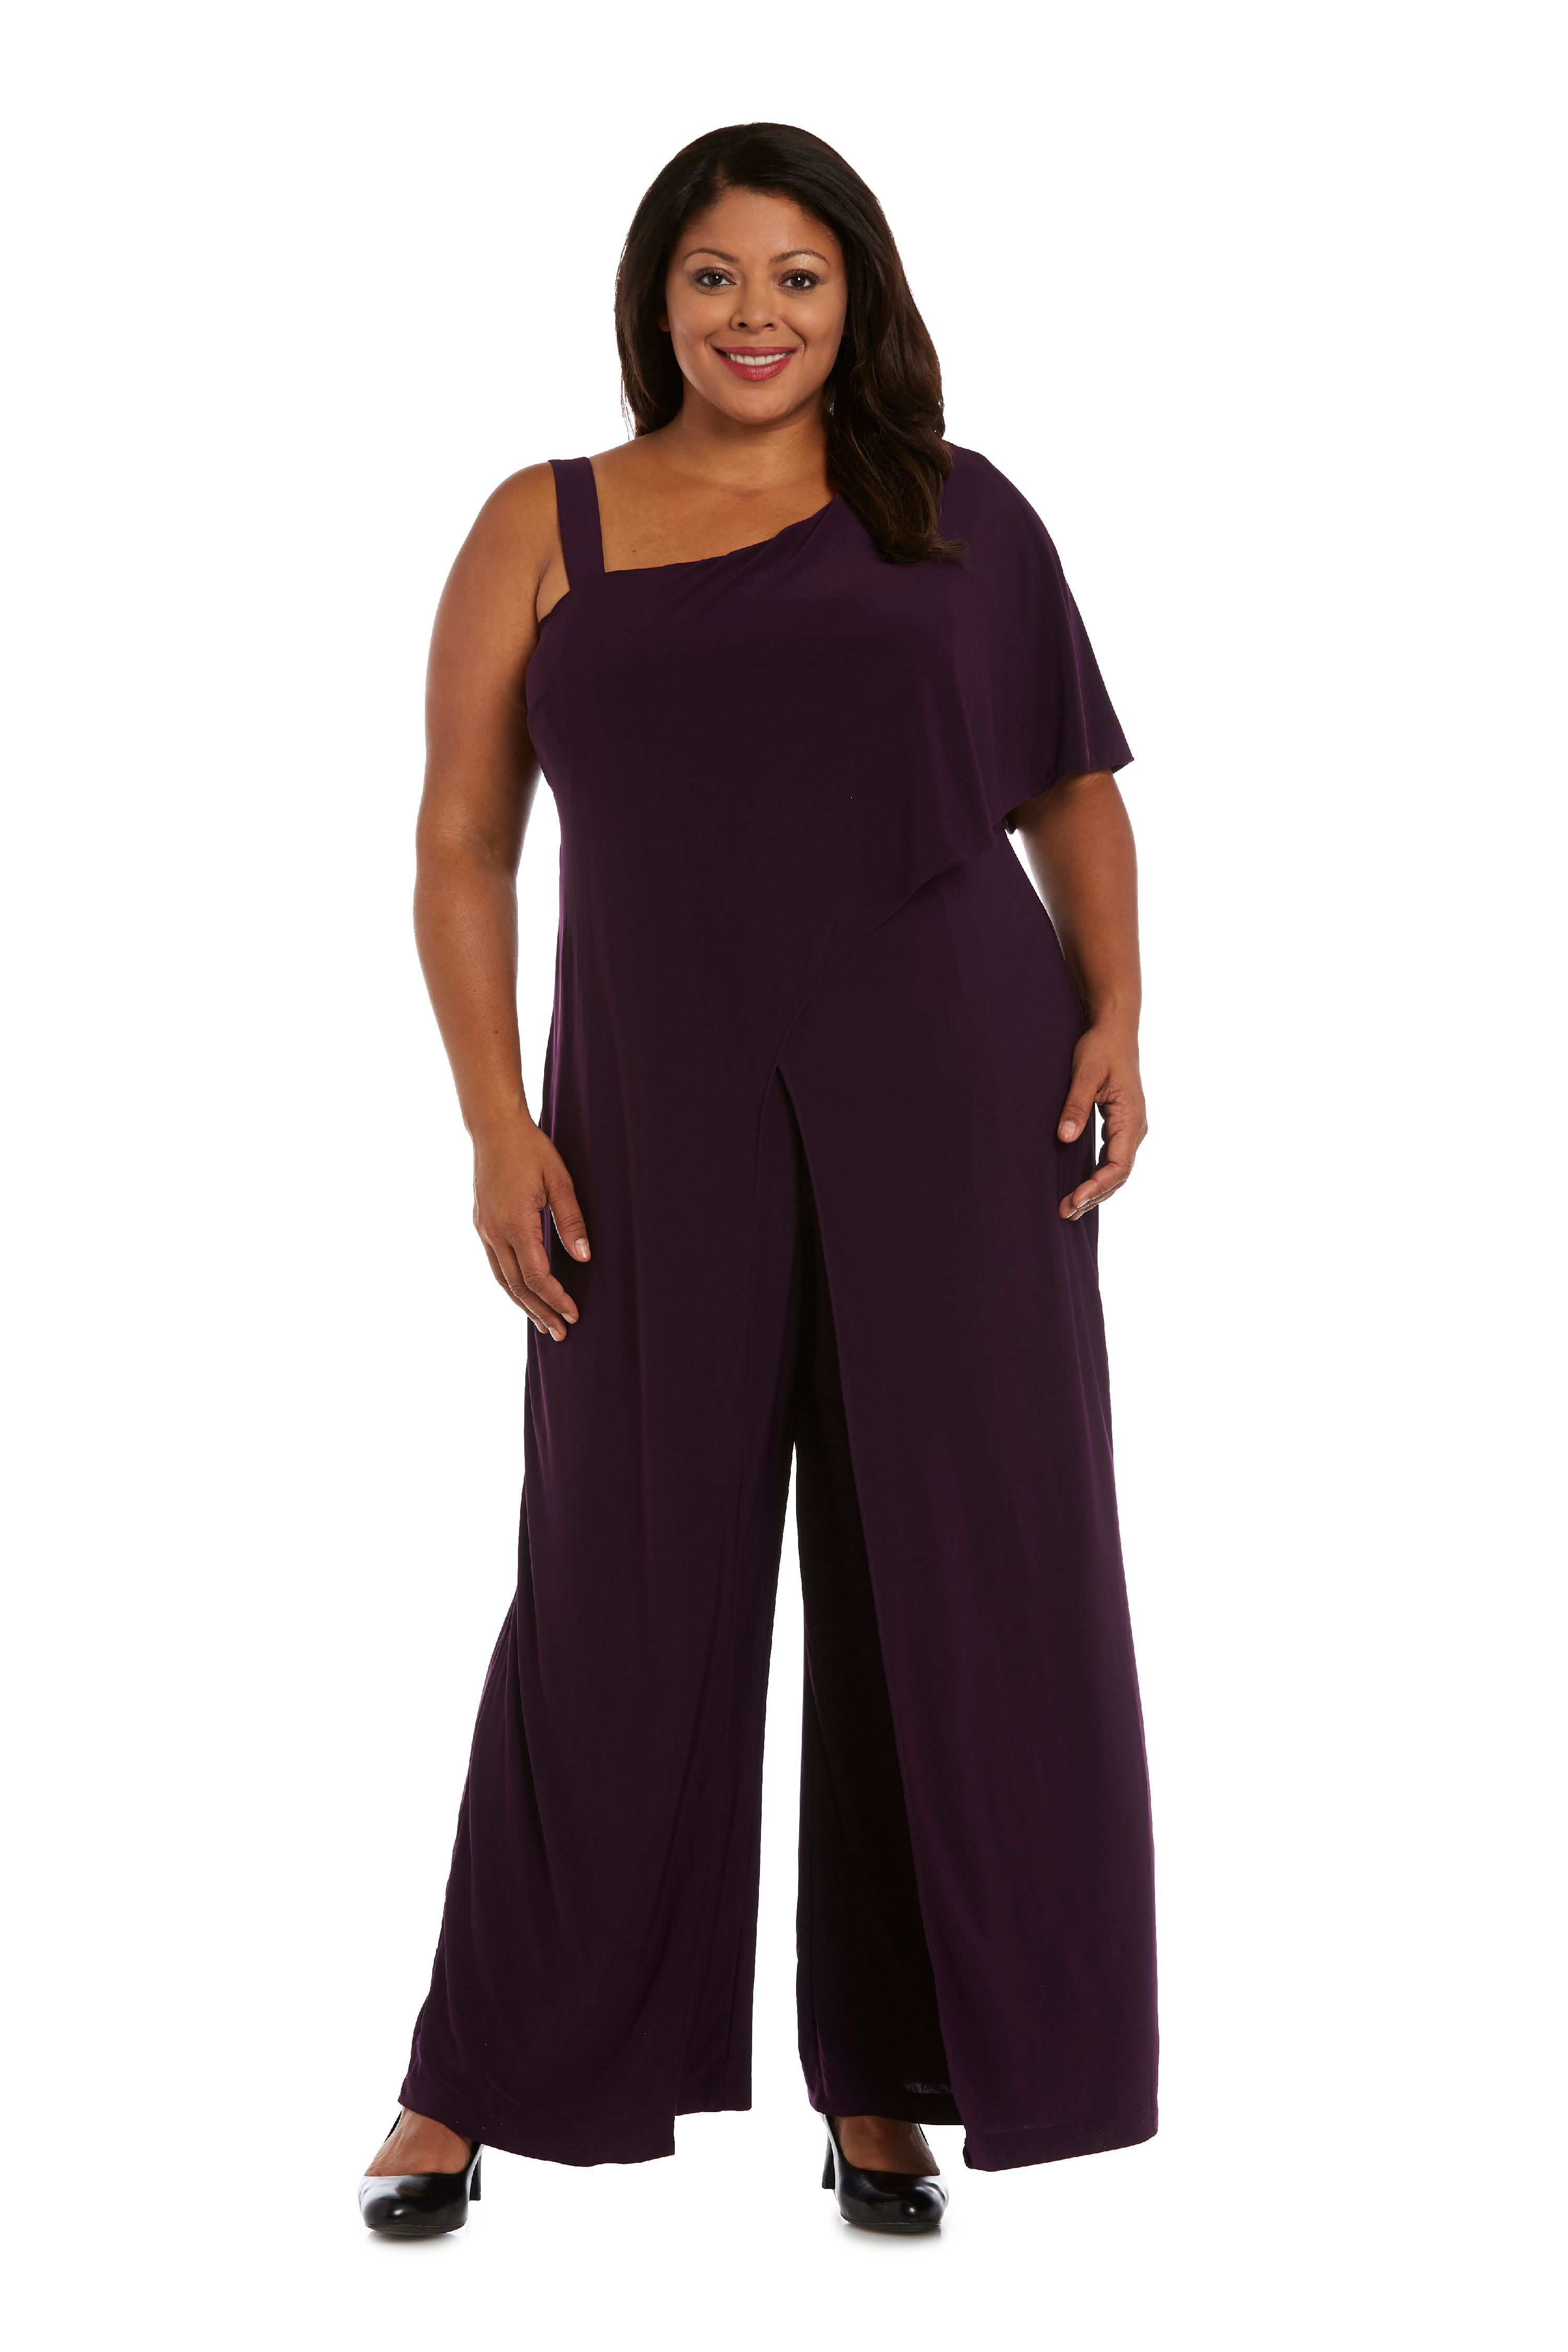 Women's Plus Size 1 Piece One Shoulder Jumpsuit with Straps - Walmart.com